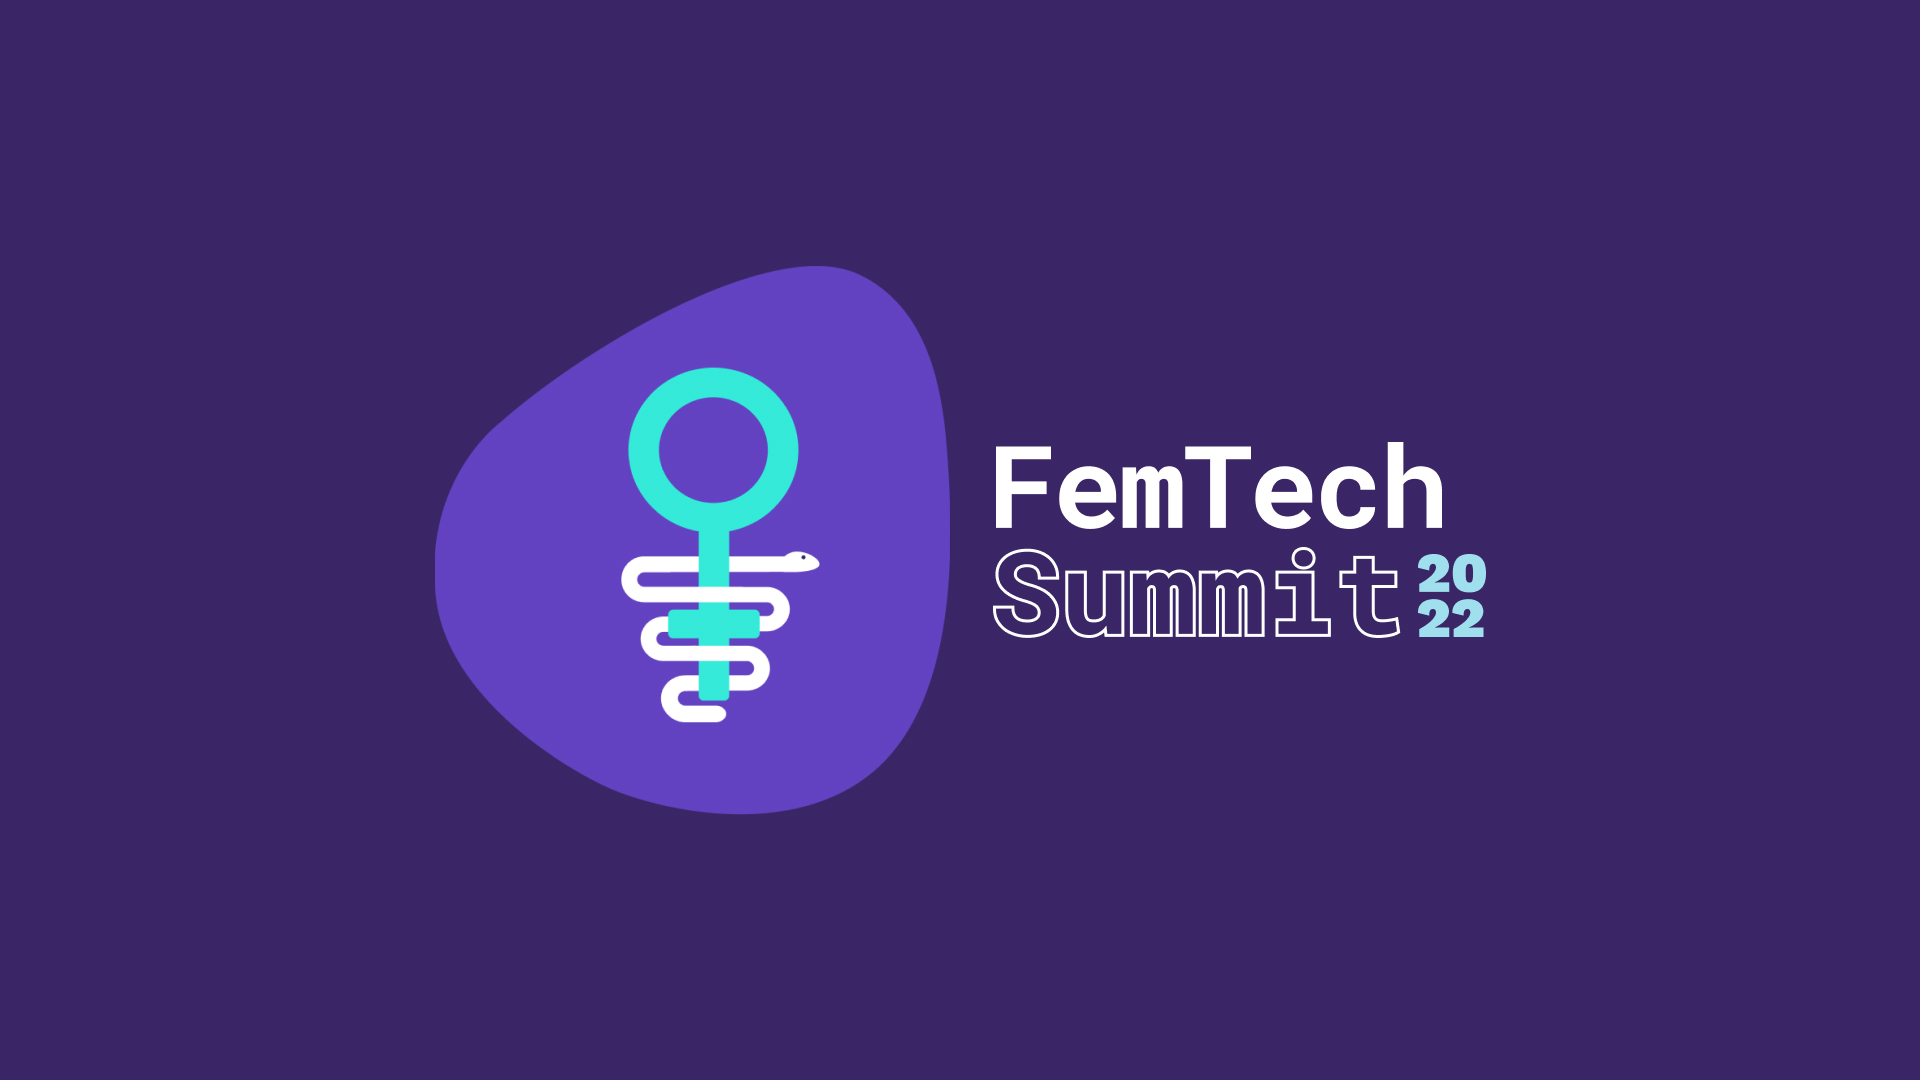 FemTech Summit